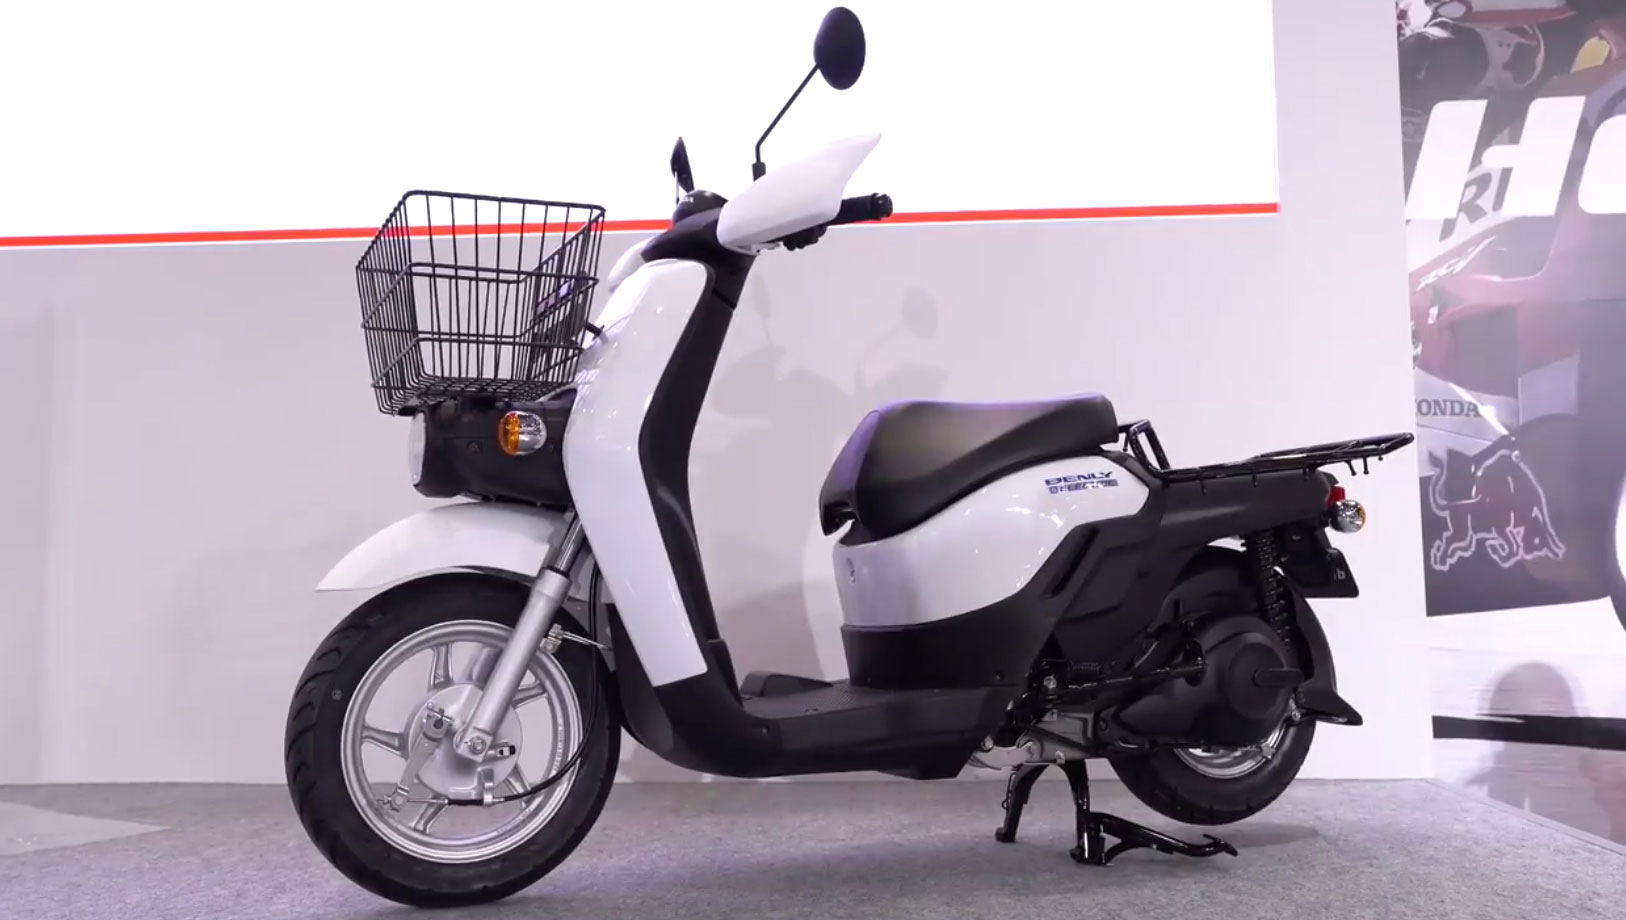 Honda présente une moto et un scooter électriques